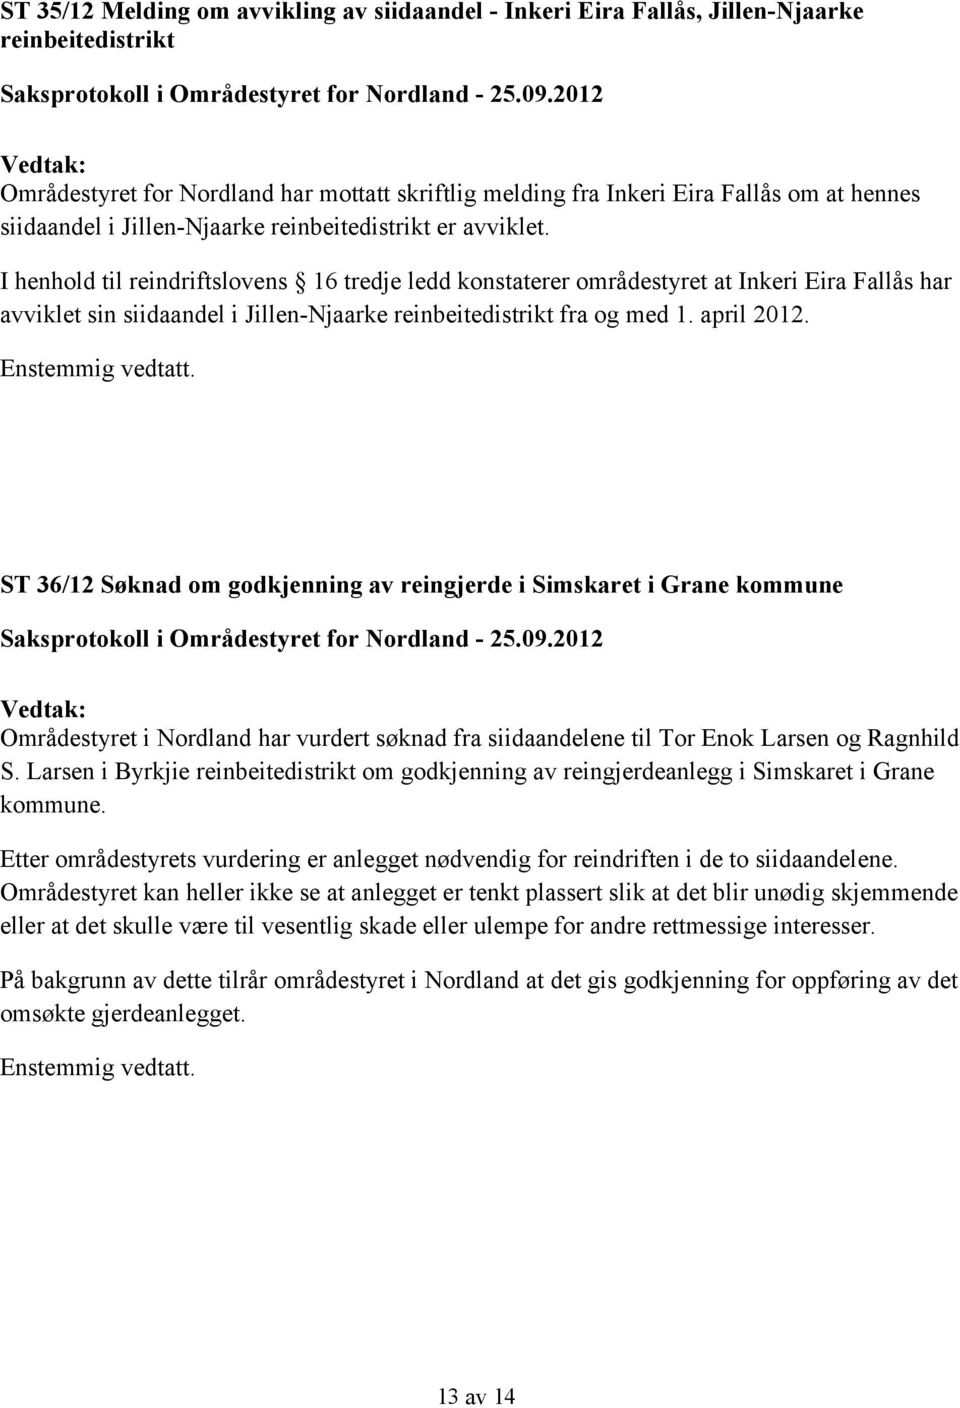 I henhold til reindriftslovens 16 tredje ledd konstaterer områdestyret at Inkeri Eira Fallås har avviklet sin siidaandel i Jillen-Njaarke reinbeitedistrikt fra og med 1. april 2012.